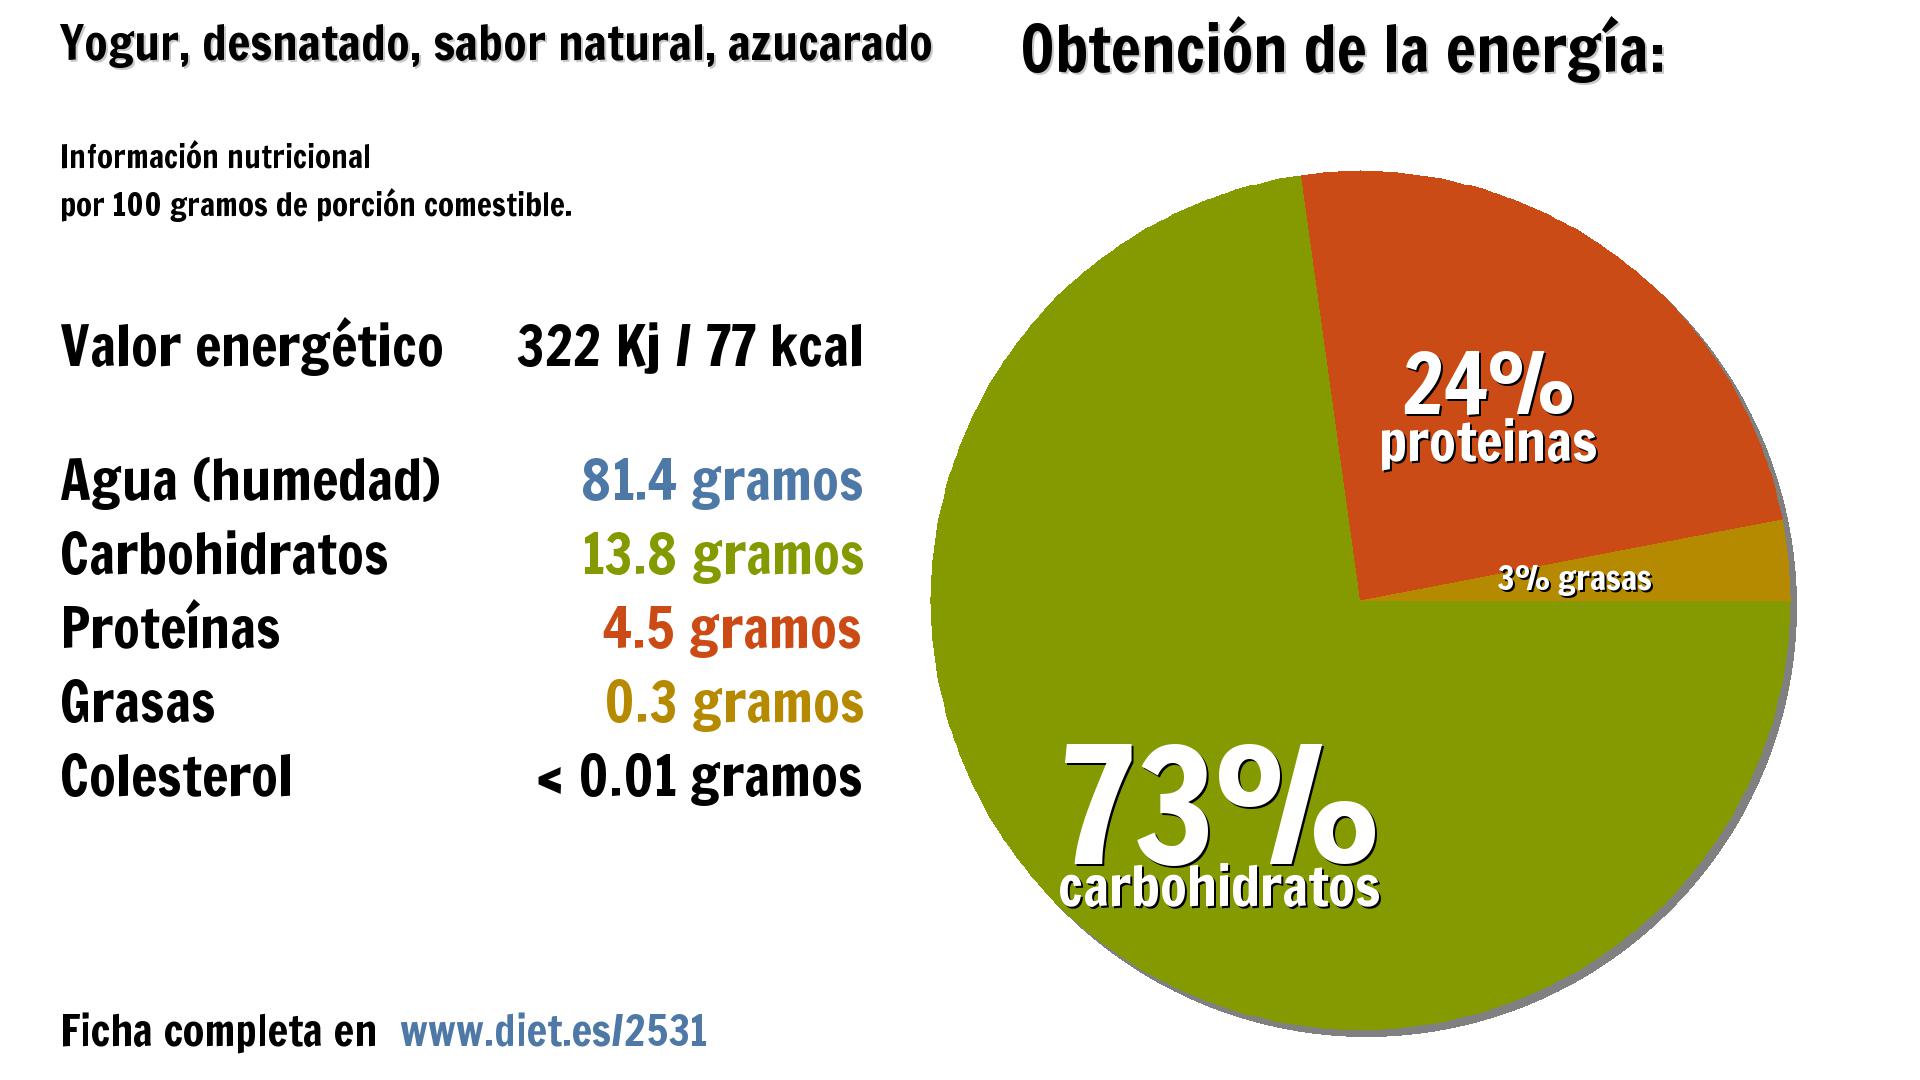 Yogur, desnatado, sabor natural, azucarado: energía 322 Kj, agua 81 g., carbohidratos 14 g. y proteínas 5 g.